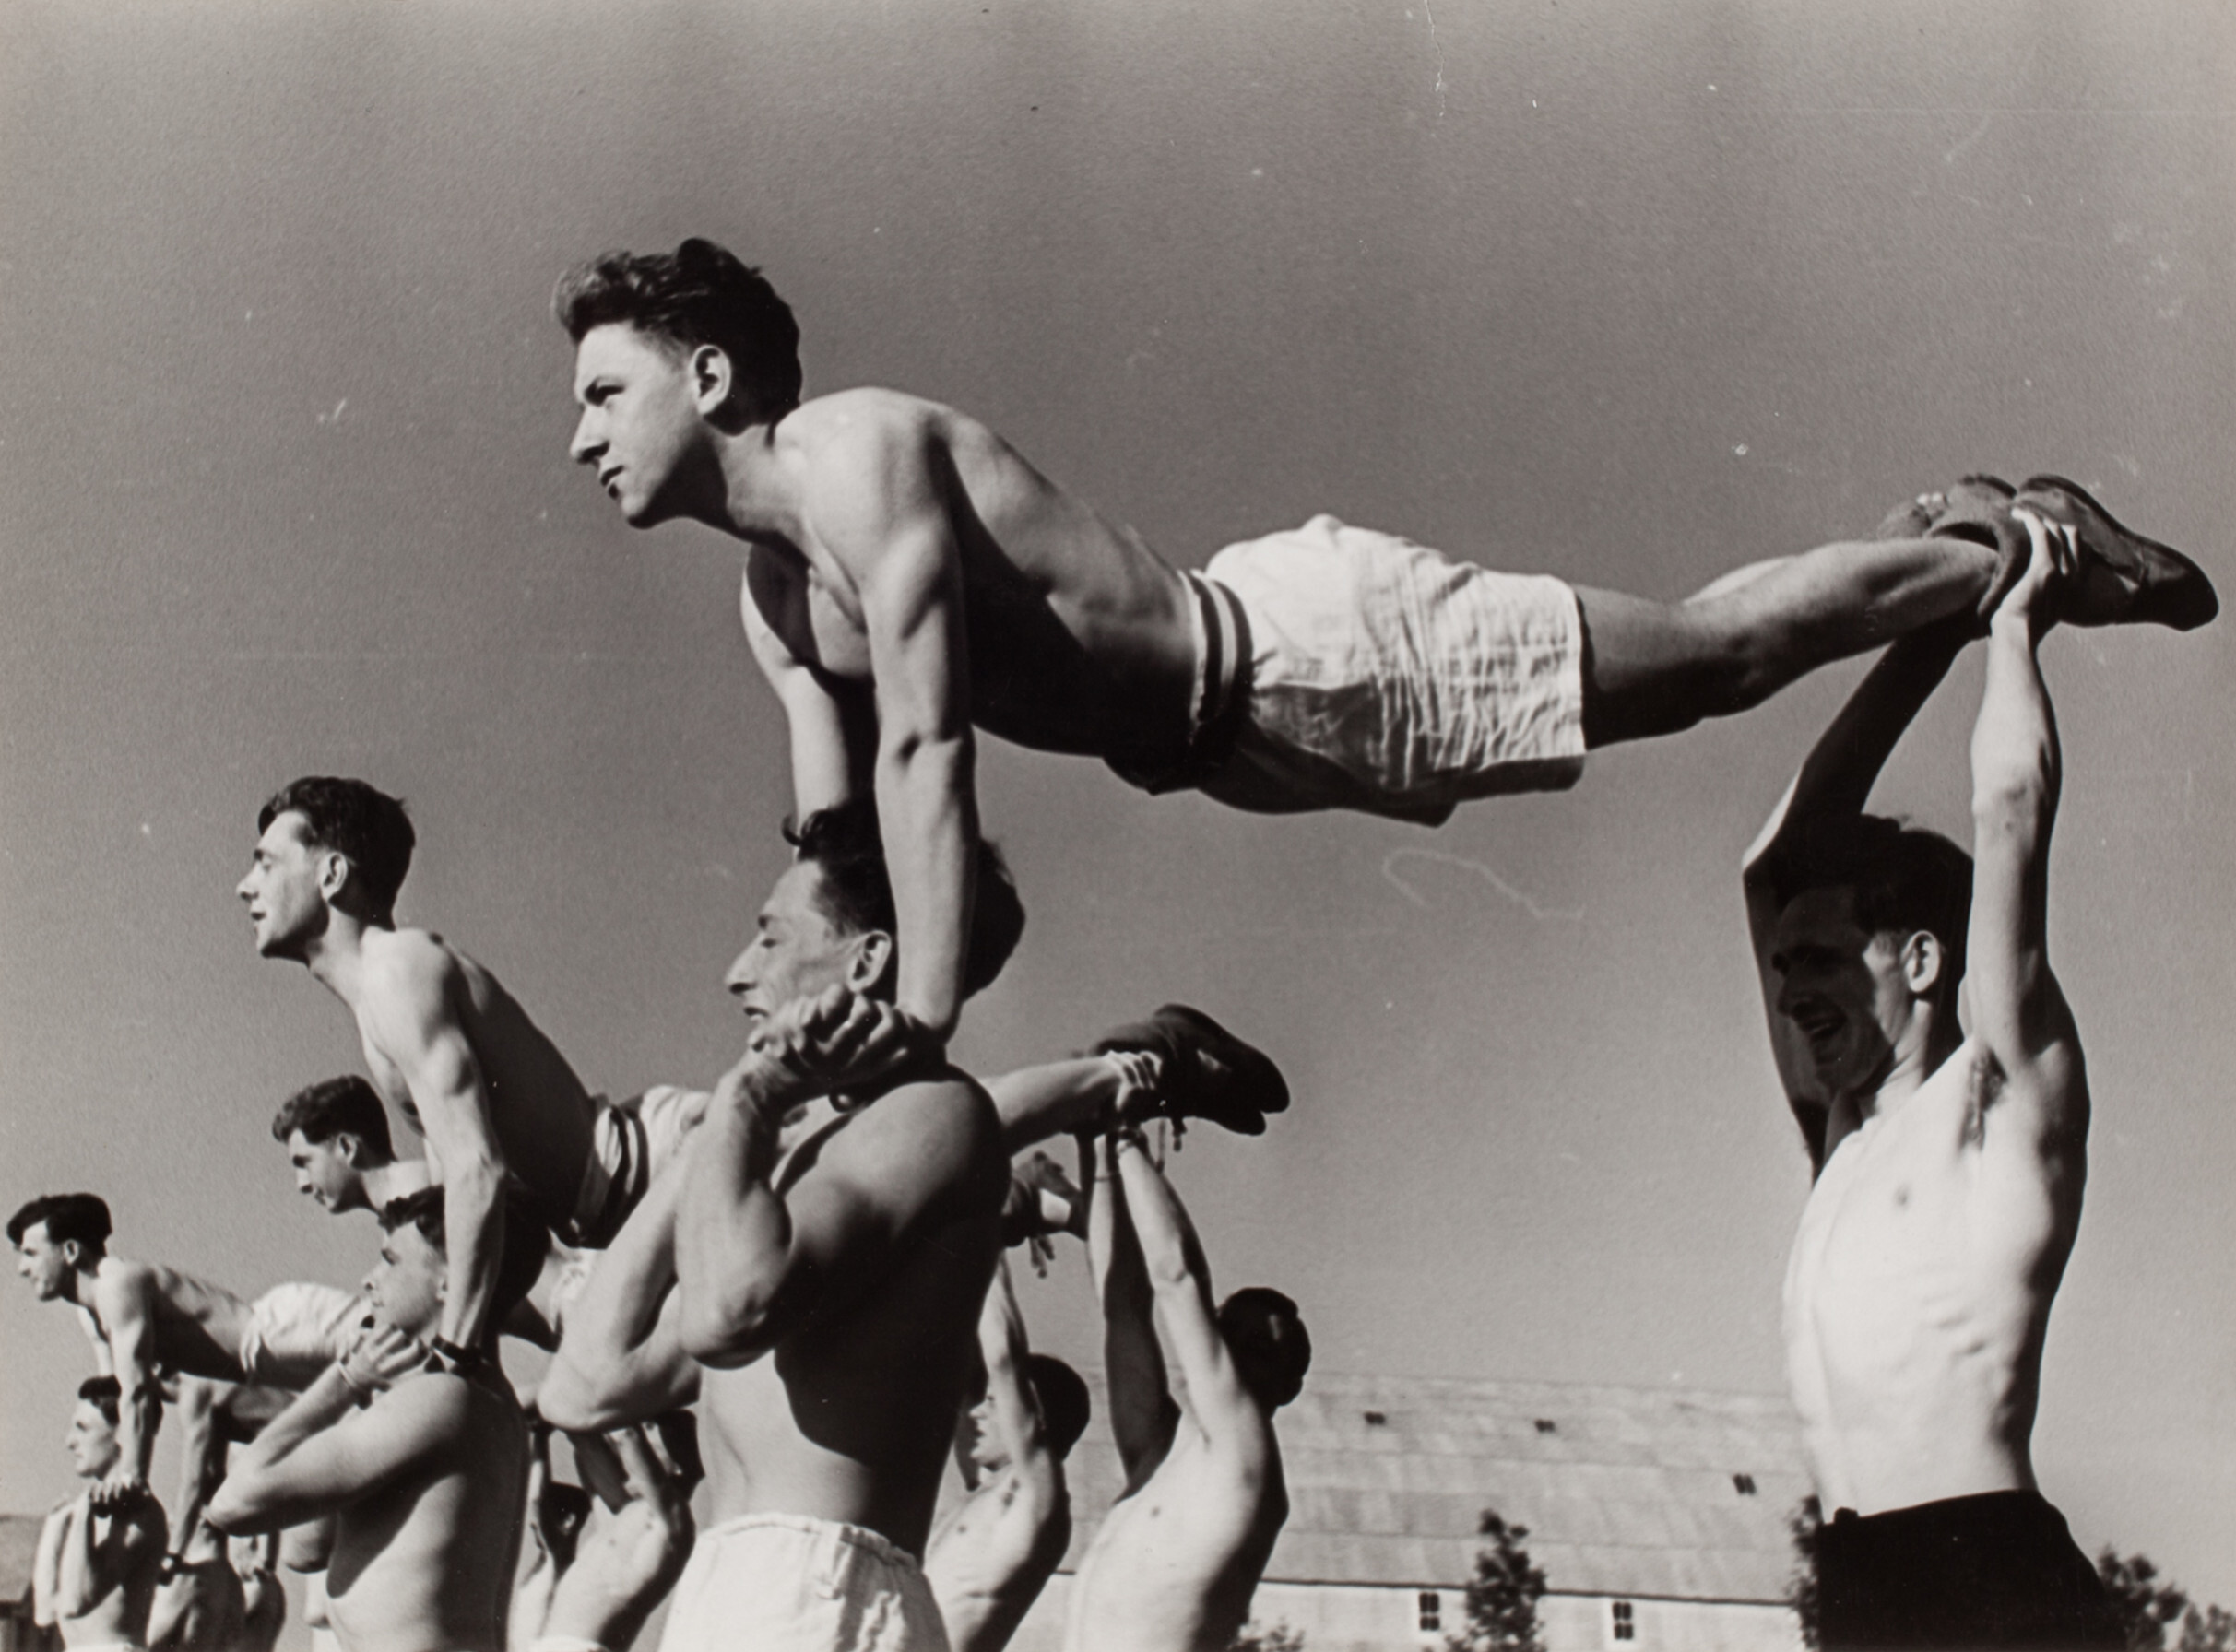 Французская авиашкола, Студенты занимаются гимнастикой, Истр, Франция, 1939 год. Фотограф Роберт Капа